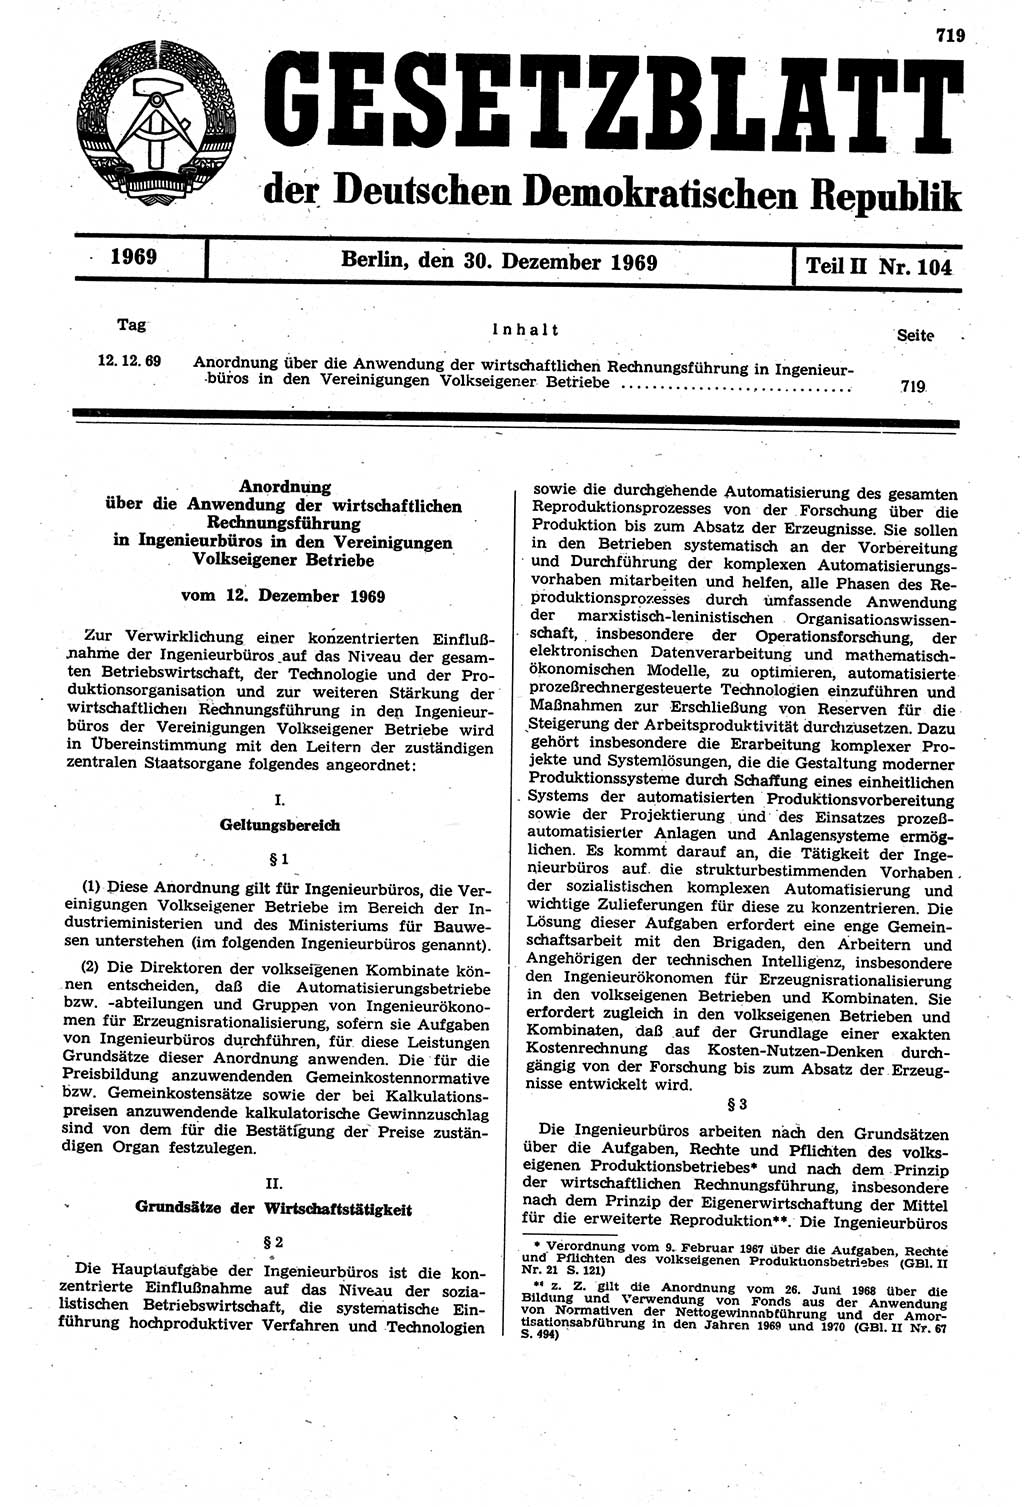 Gesetzblatt (GBl.) der Deutschen Demokratischen Republik (DDR) Teil ⅠⅠ 1969, Seite 719 (GBl. DDR ⅠⅠ 1969, S. 719)